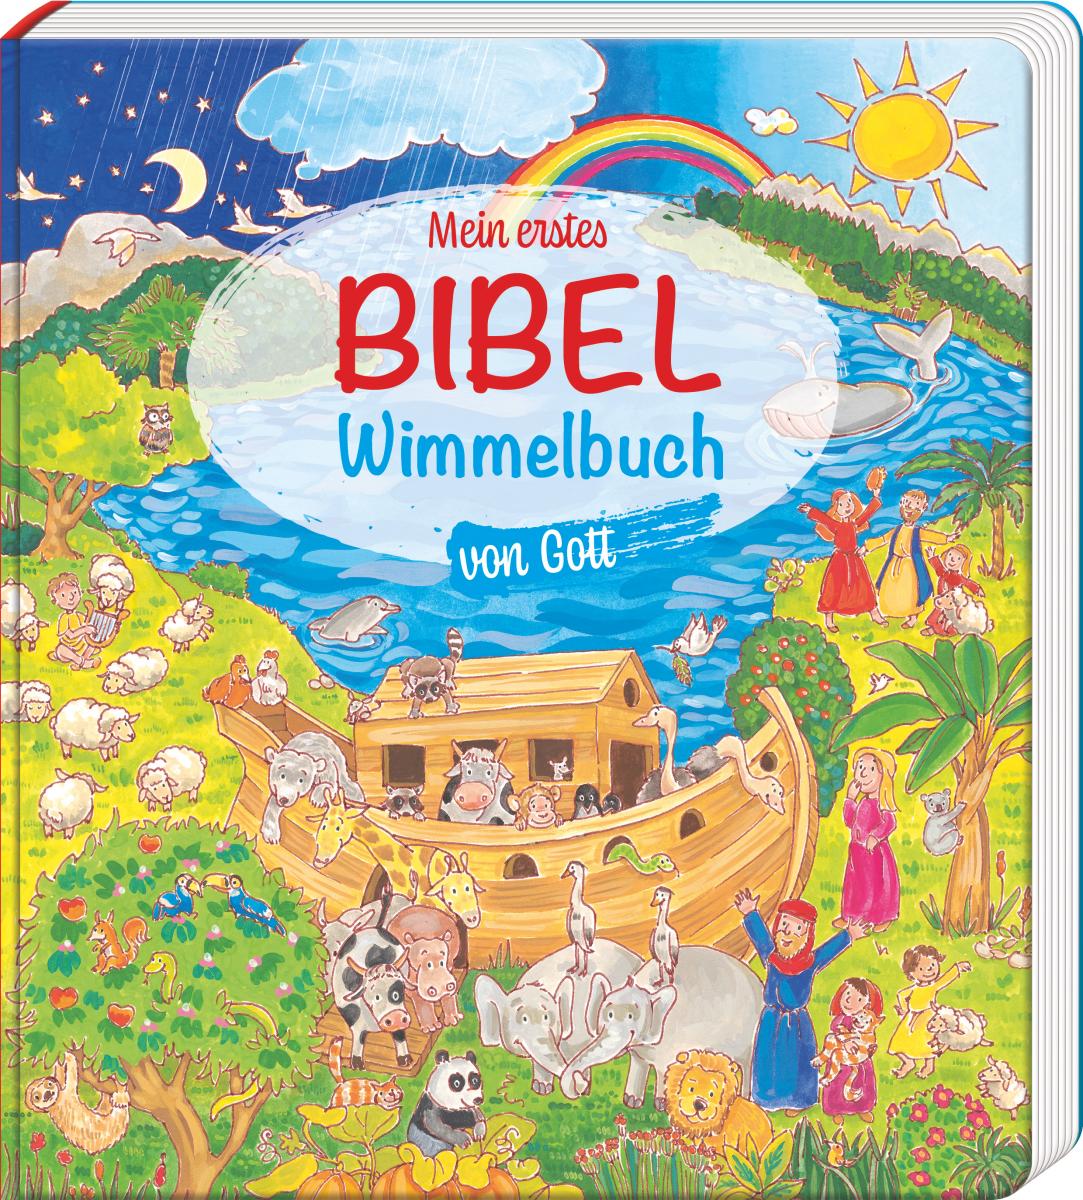 Kinderbuch - Mein erstes Bibel-Wimmelbuch von Gott